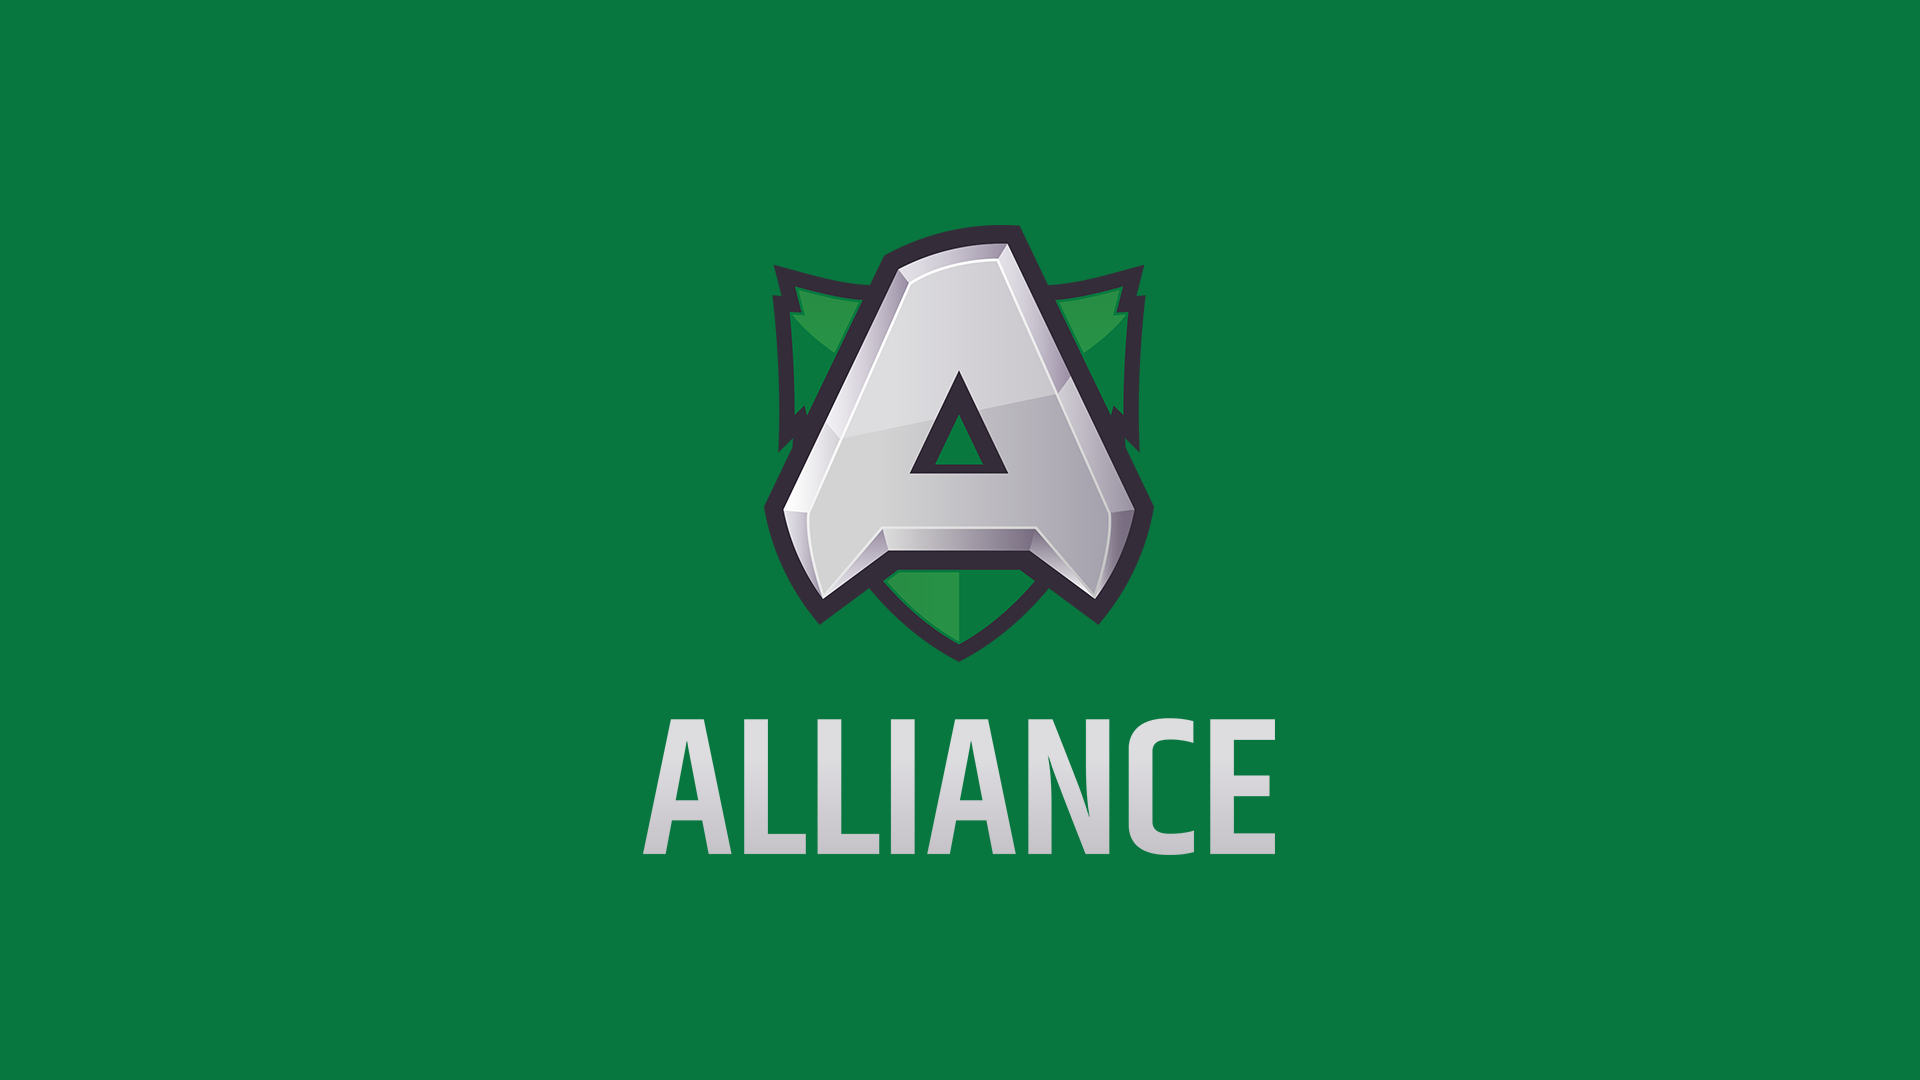 Alliance совершила дизбанд состава по Dota 2